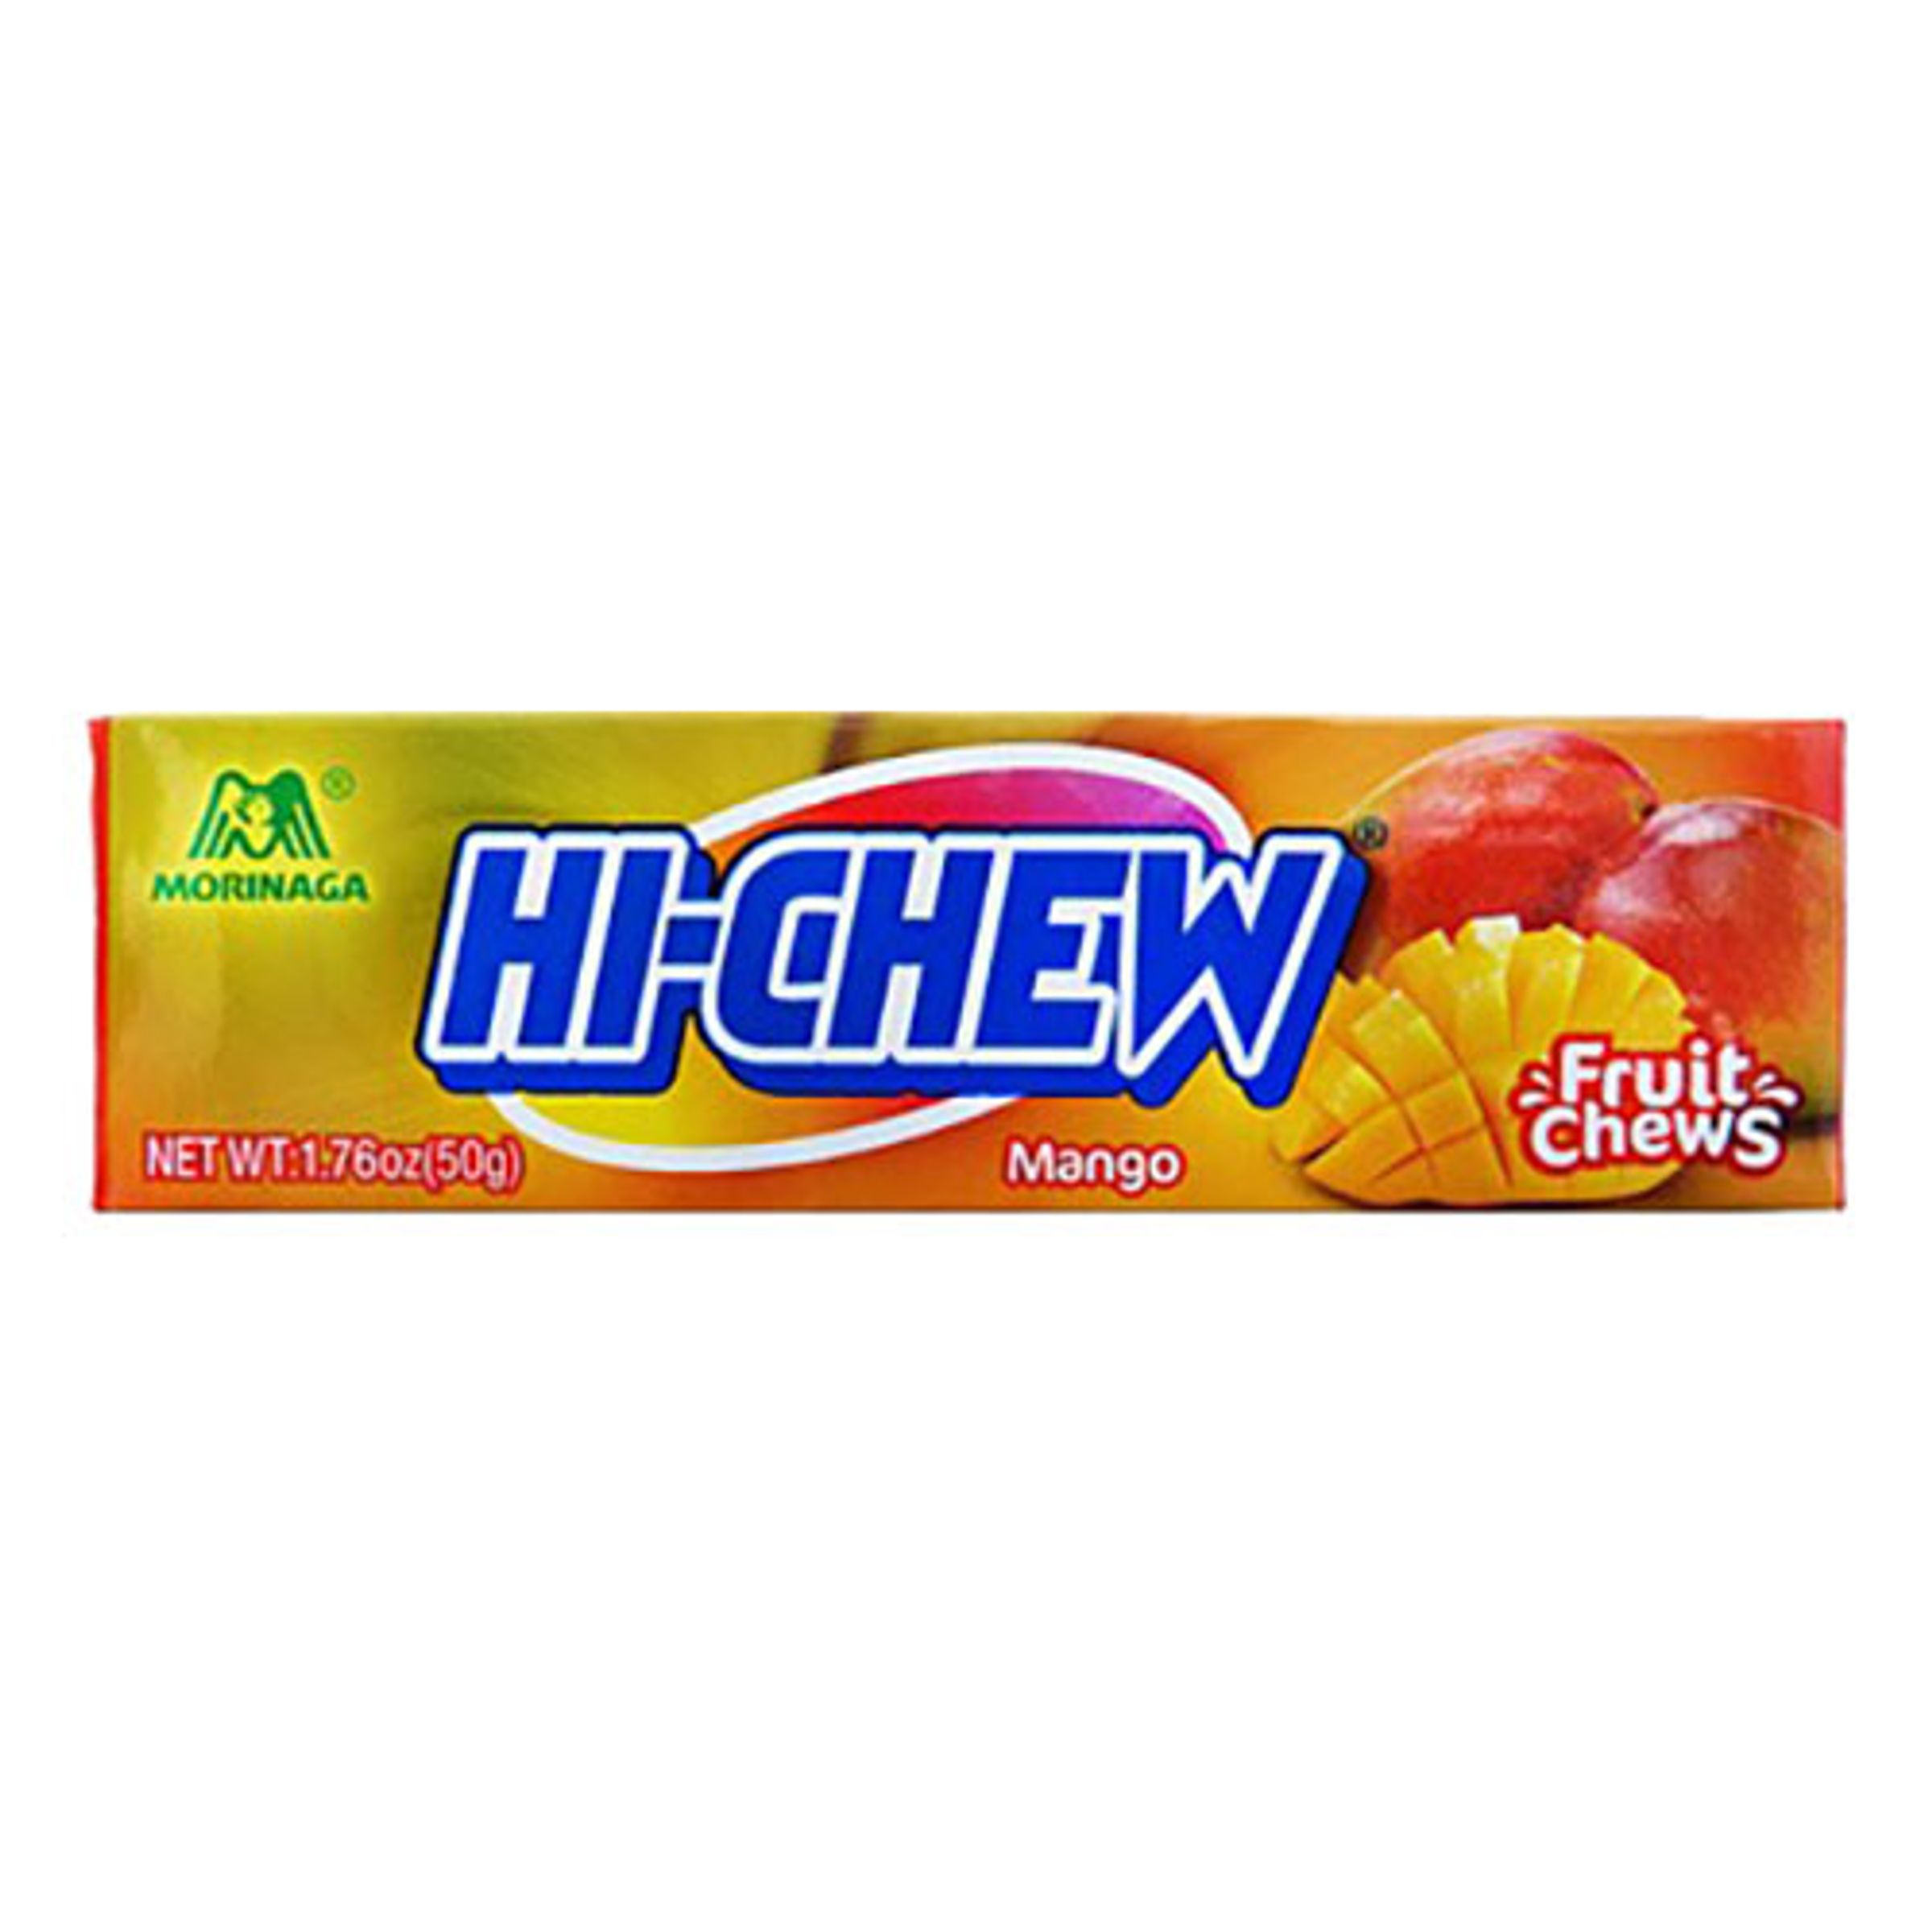 Hi Chew Mango - 50 gram